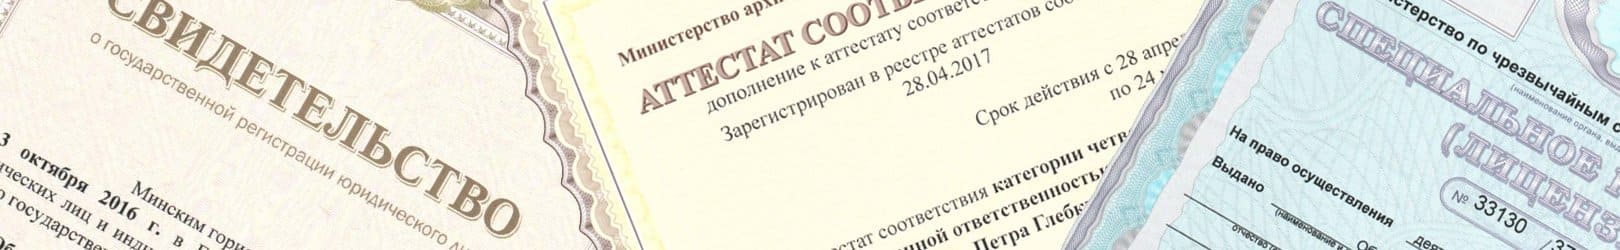 Лицензии и сертификаты АлисВЕТА